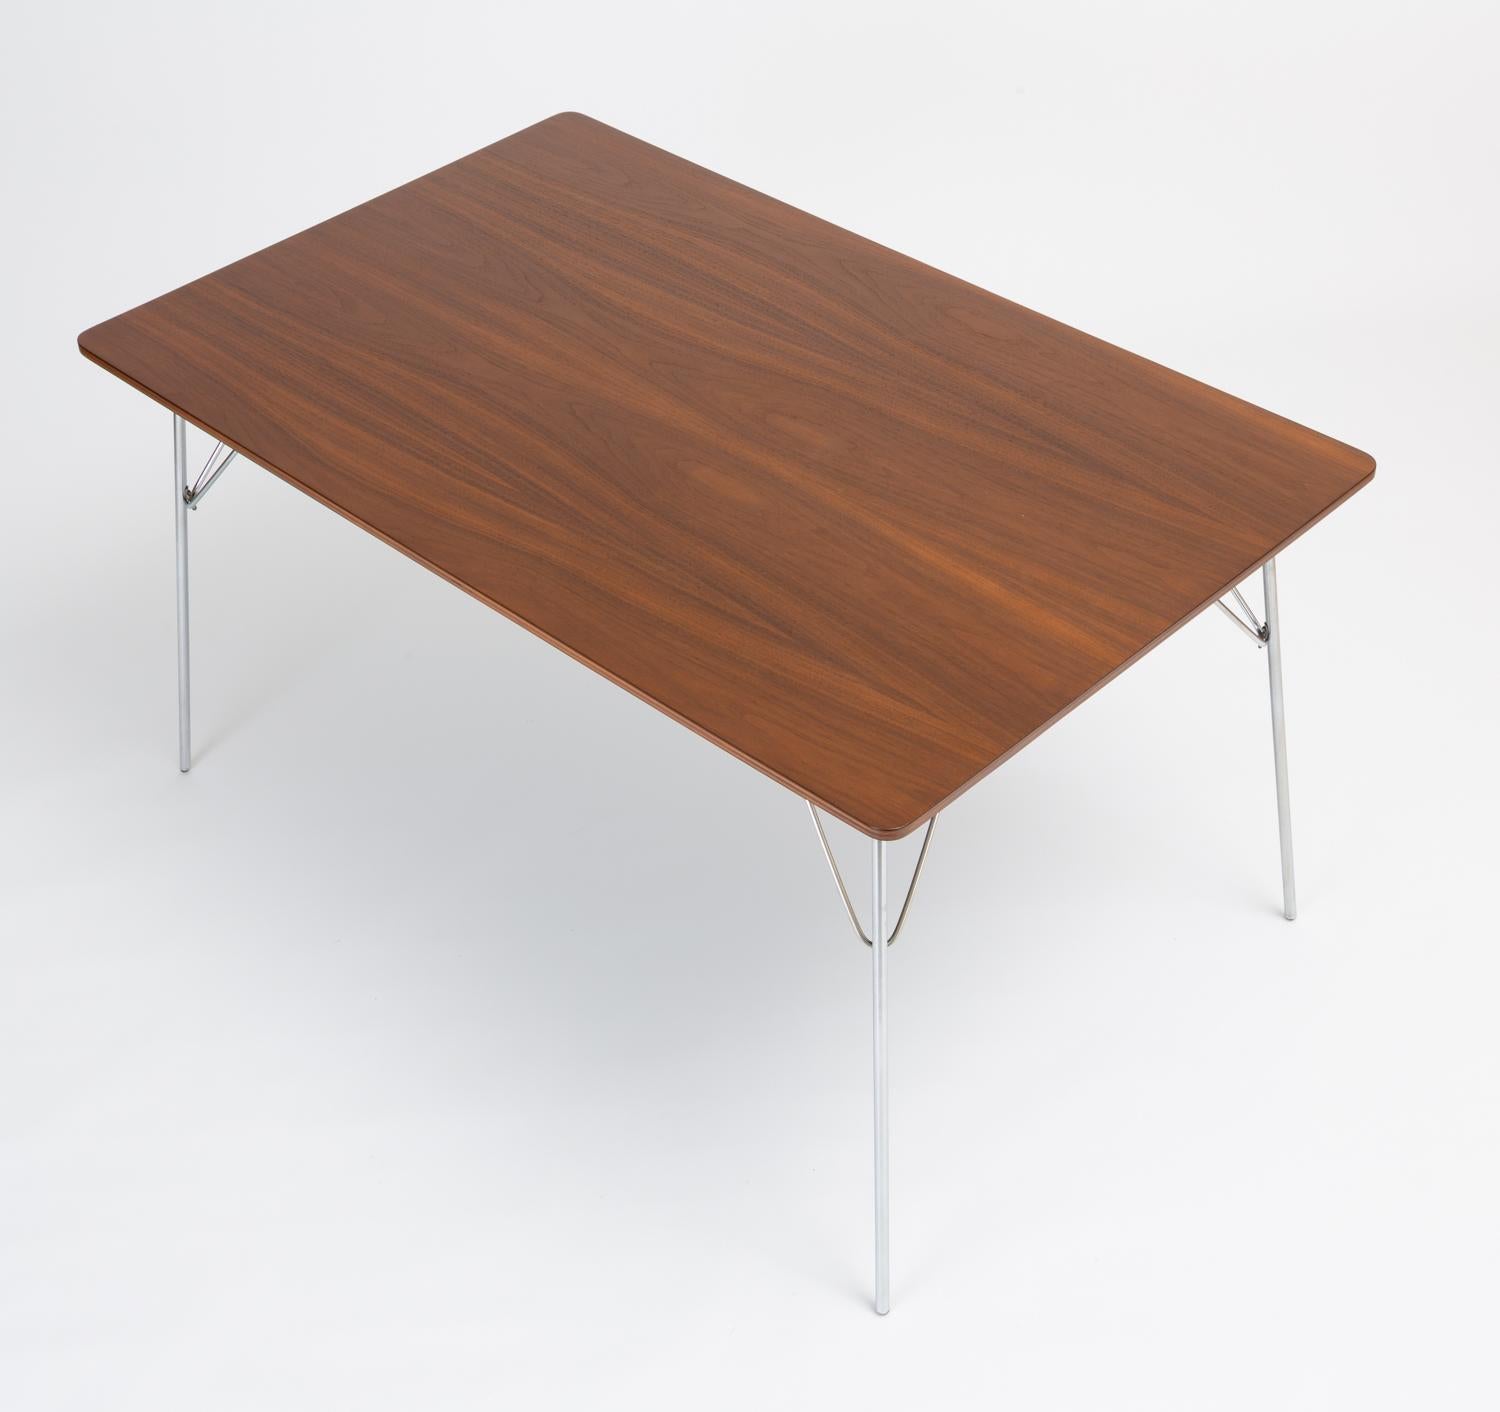 Ein rechteckiger Esstisch mit nussbaumfurnierter Oberfläche und klappbaren Metallbeinen:: entworfen von Ray und Charles Eames und hergestellt von Herman Miller. Dieses Exemplar mit der Bezeichnung DTM-10 (